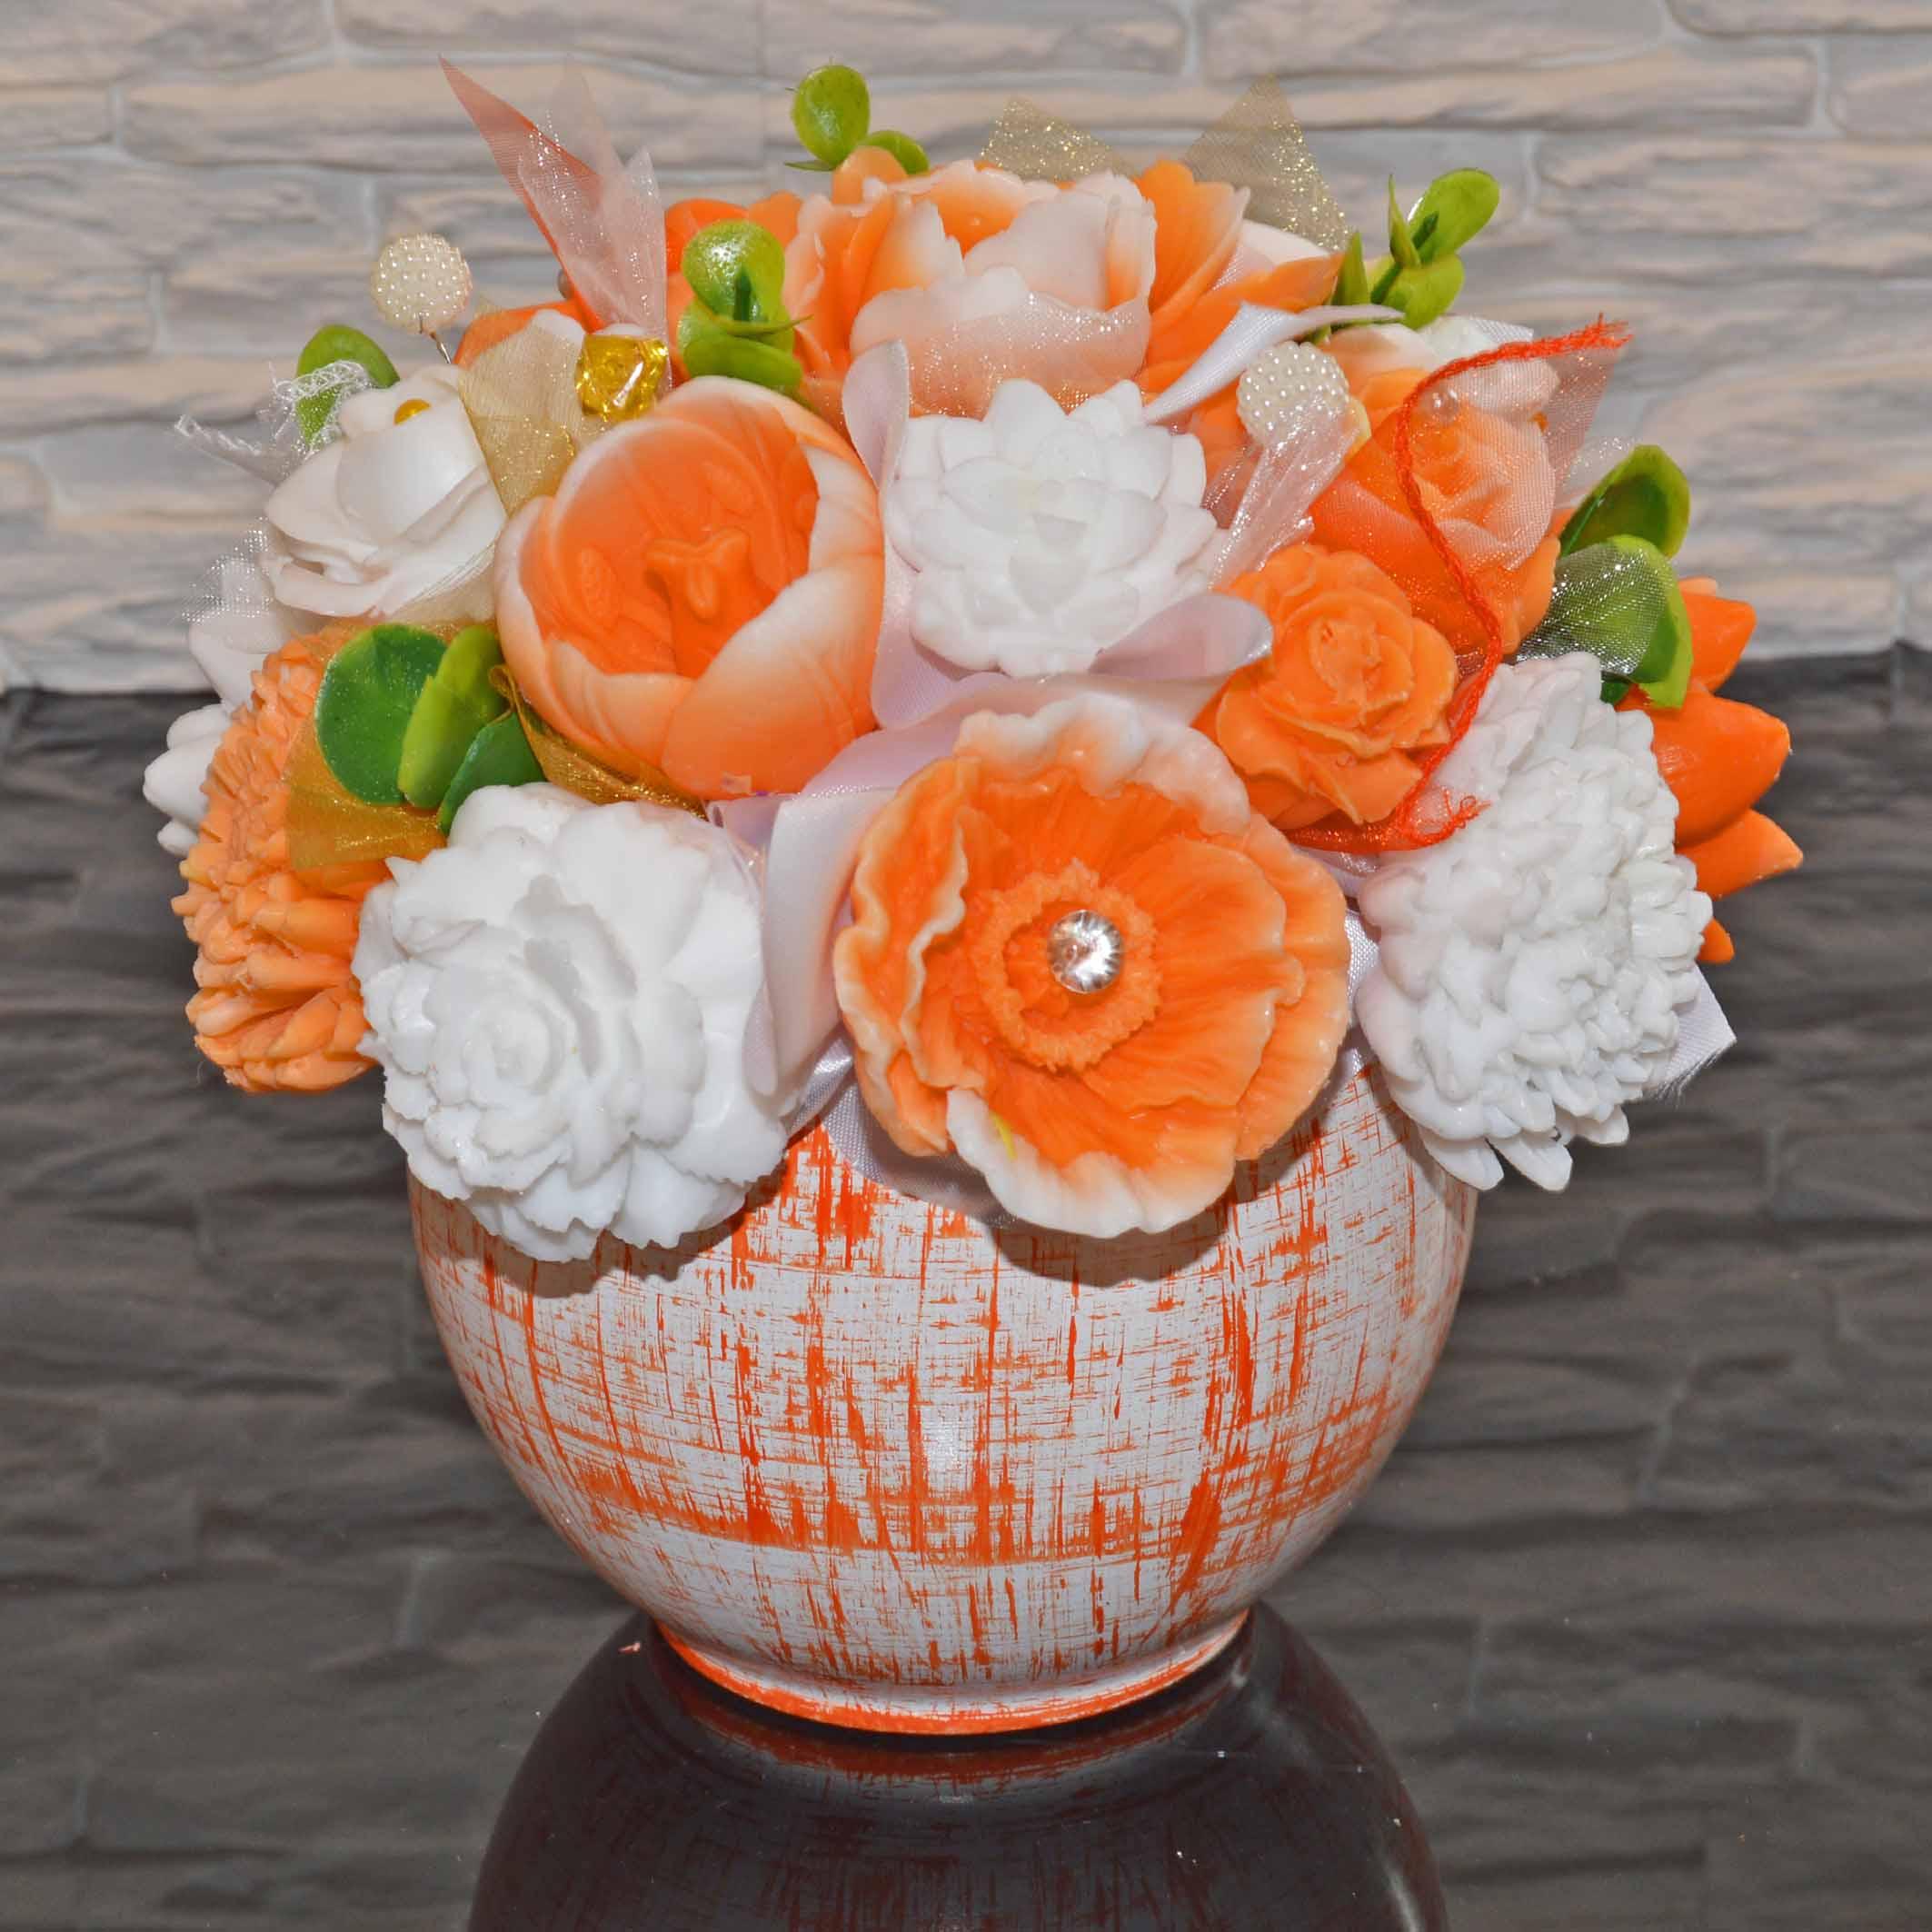 Mýdlová kytice v keramickém květináči - oranžová, bílá